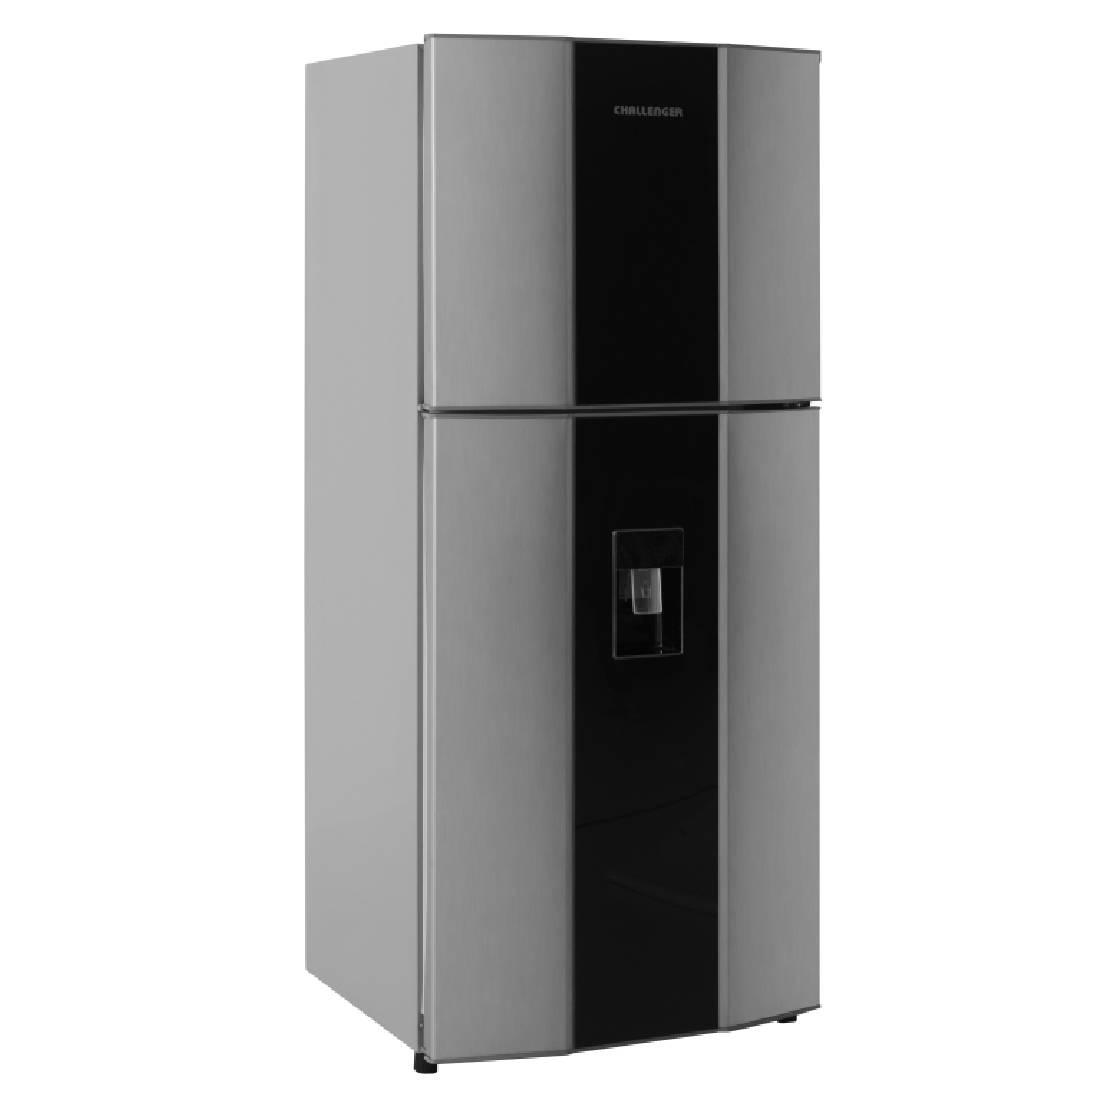 Refrigeradora CHALLENGER CR428 No Frost Gris con Acrílico